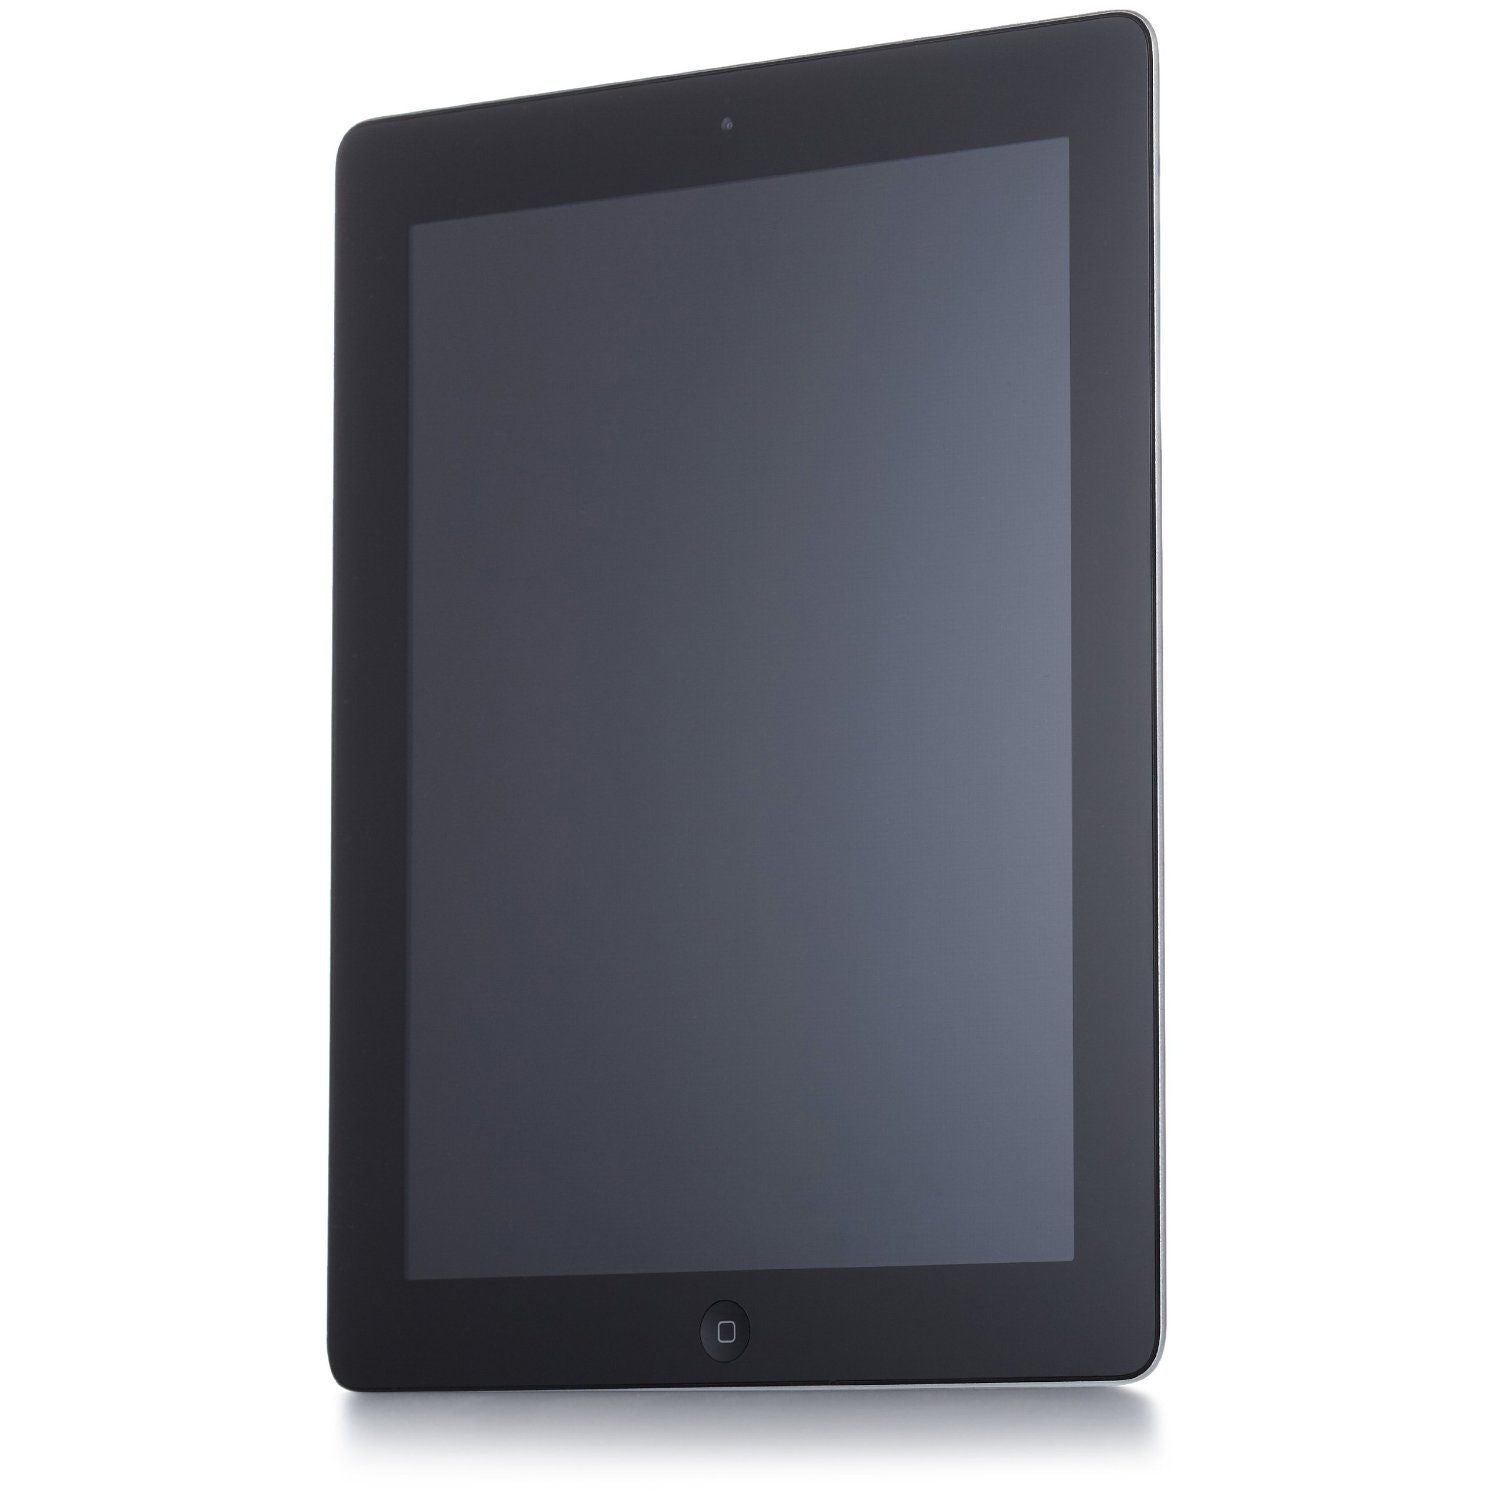 Apple iPad 2 (2011), 9.7", MC775LL/A, Wi-Fi, 64GB, Black - Refurbished Fair